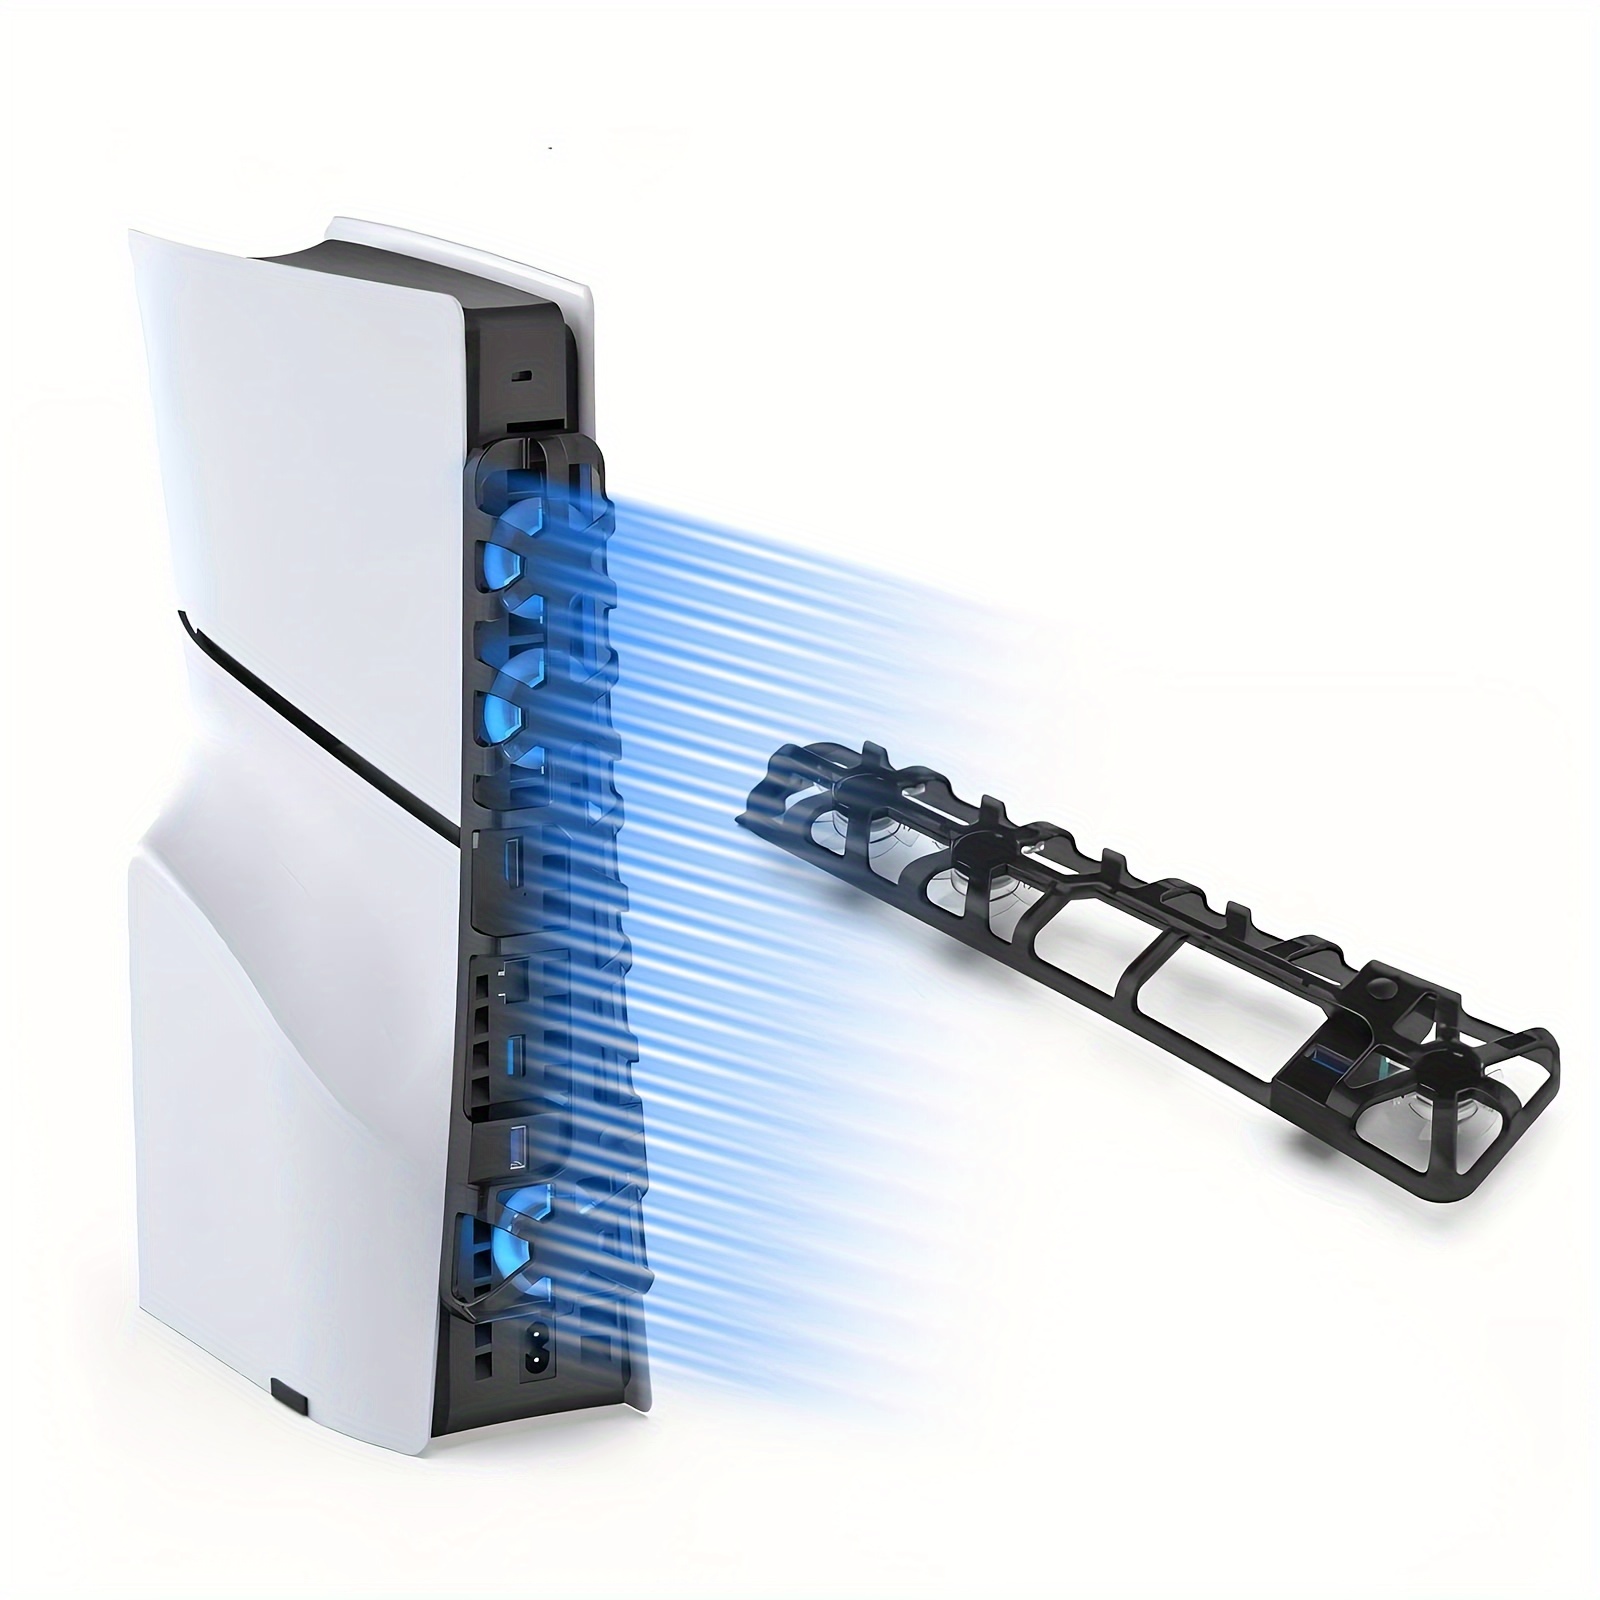 Ventilador de refrigeración PS5, ventilador horizontal PS5 con luz LED,  compatible con PS5 edición digital o edición de discos